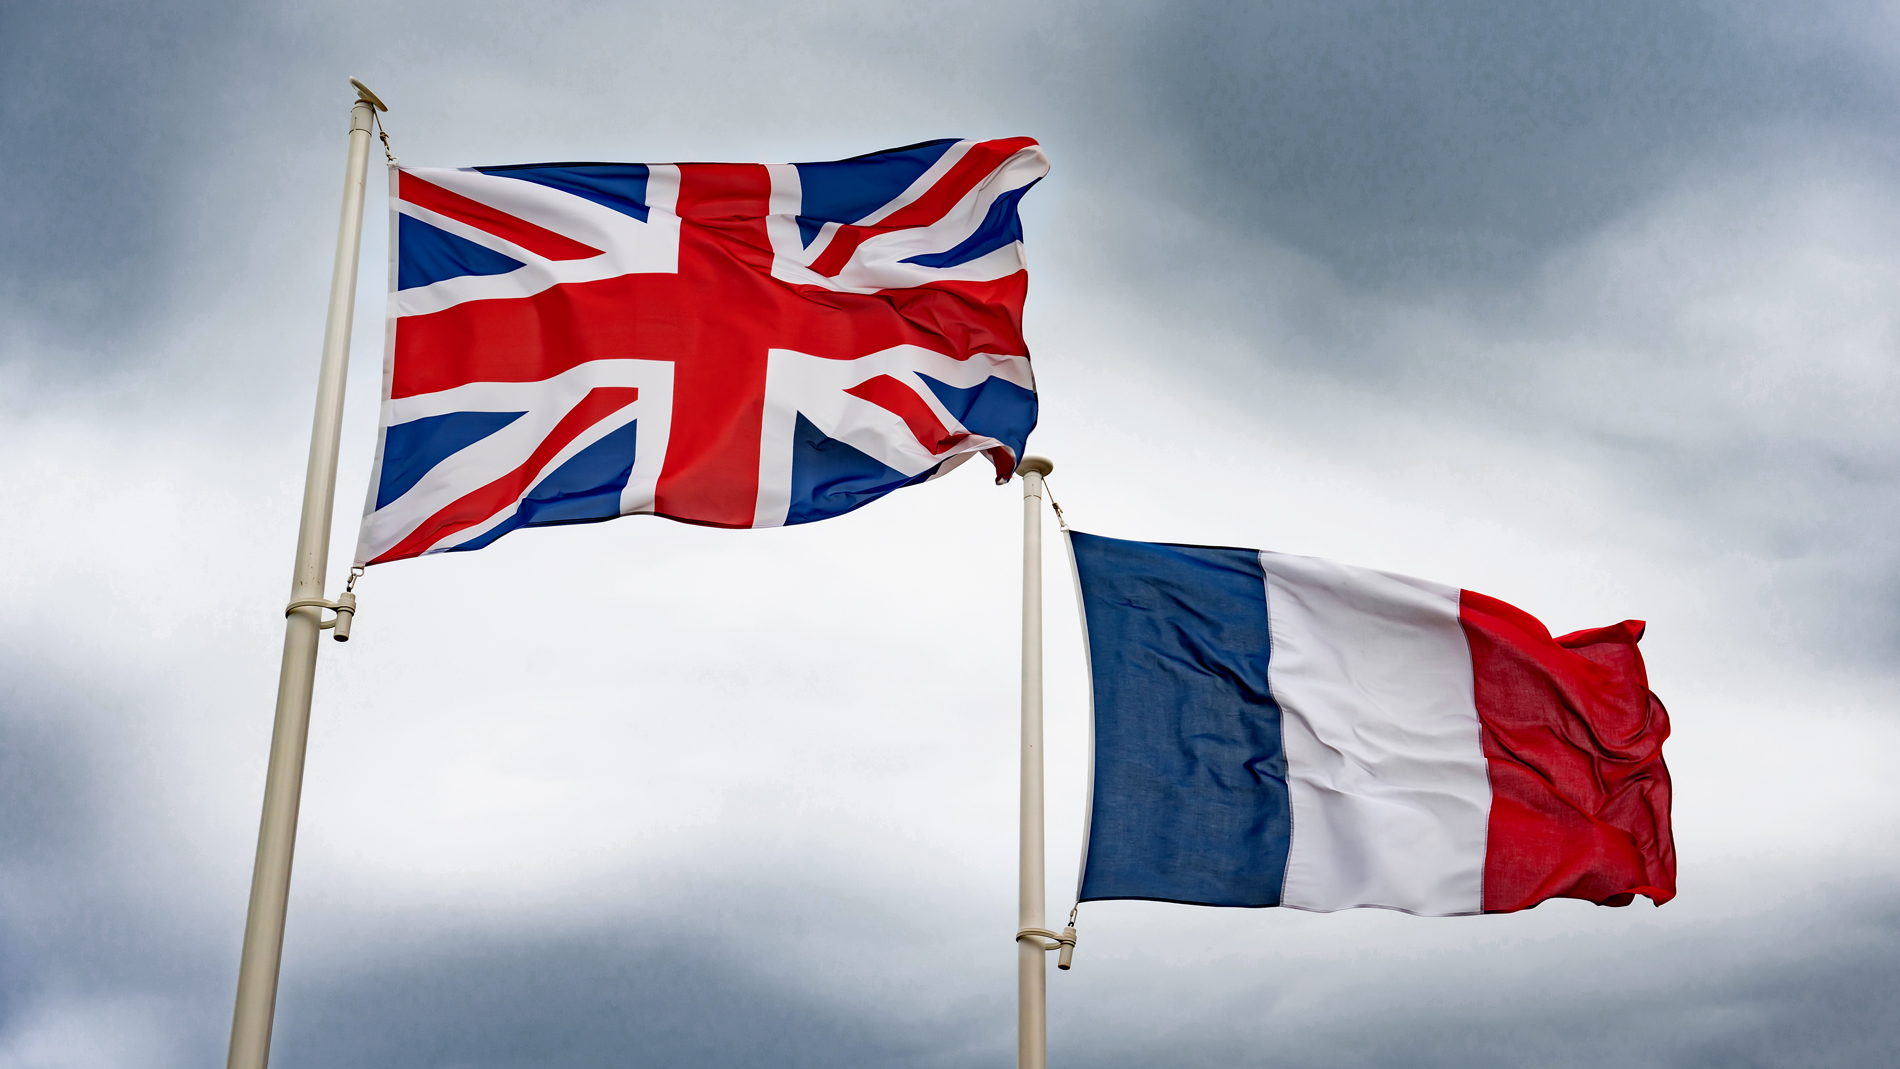 Государственные языки английский и французский. Франция и Великобритания. Британия и Франция. Флаг Англии и Франции. Флаг Франции и Великобритании.